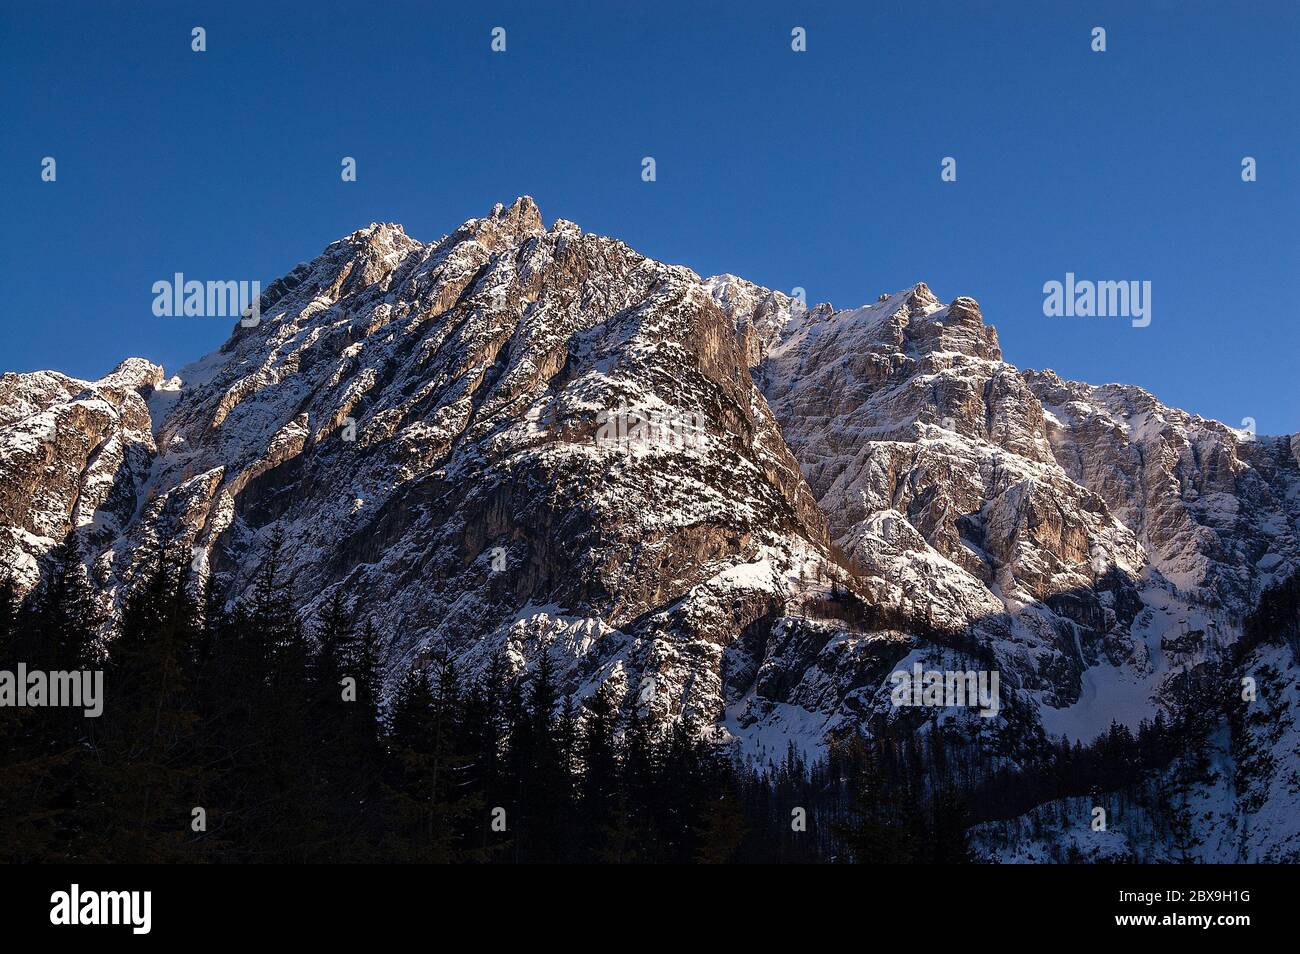 Mont Jod di Montasio. Alpes juliennes en hiver dans la vallée de Saisera (Val Saisera) avec des sommets enneigés et un ciel bleu clair. Tarvisio, Friuli, Italie. Banque D'Images